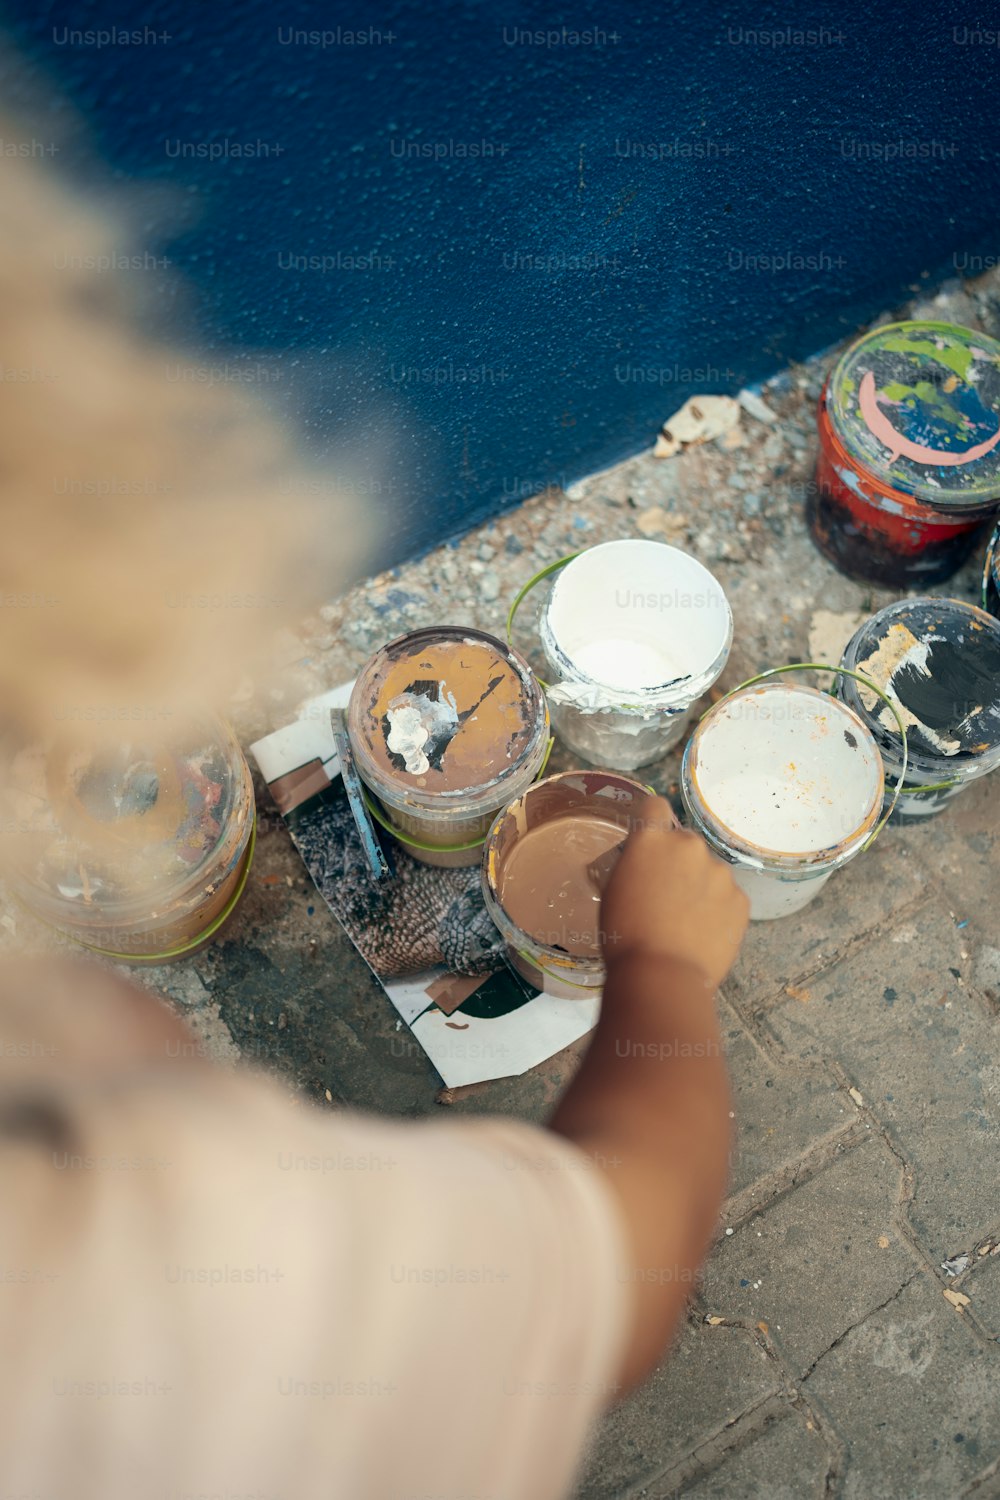 Una persona sta dipingendo un muro con barattoli di vernice